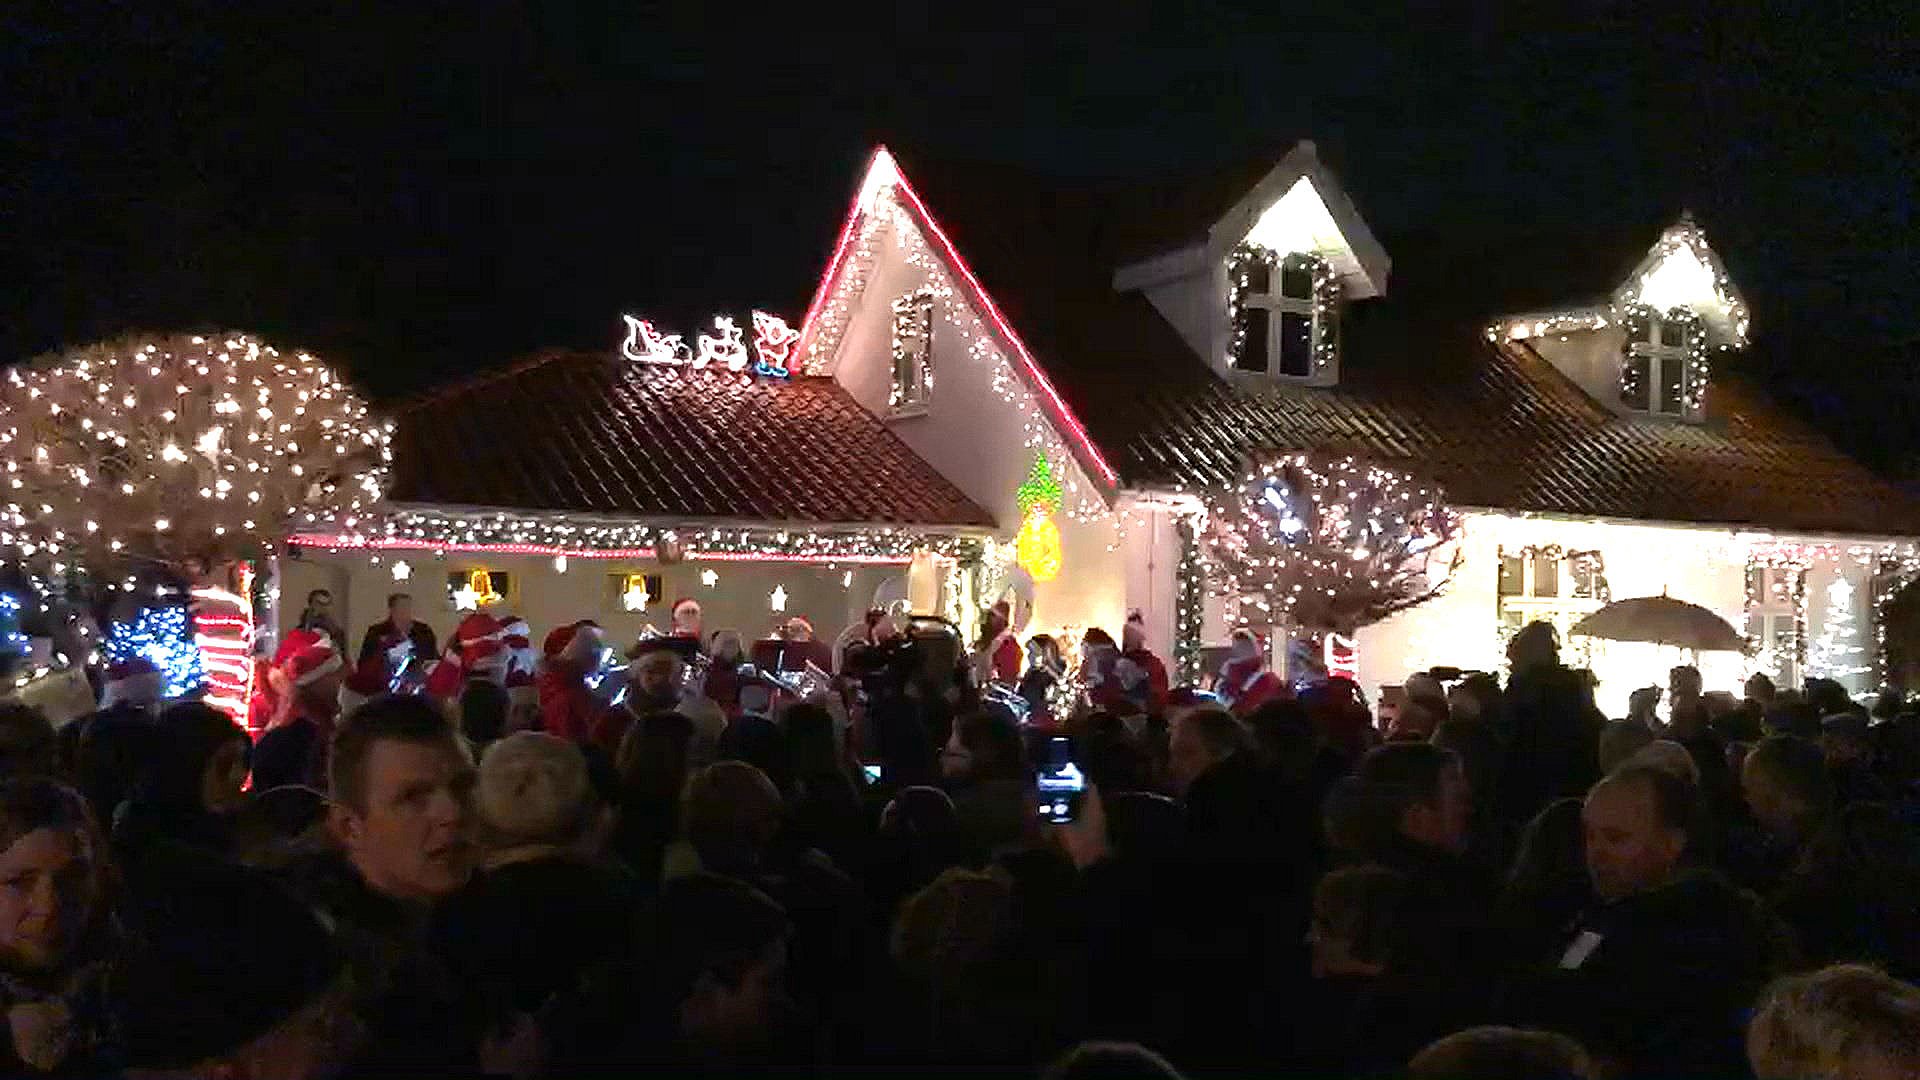 aften tændes lysene i Danmarks mest julede gade | TV2 Østjylland